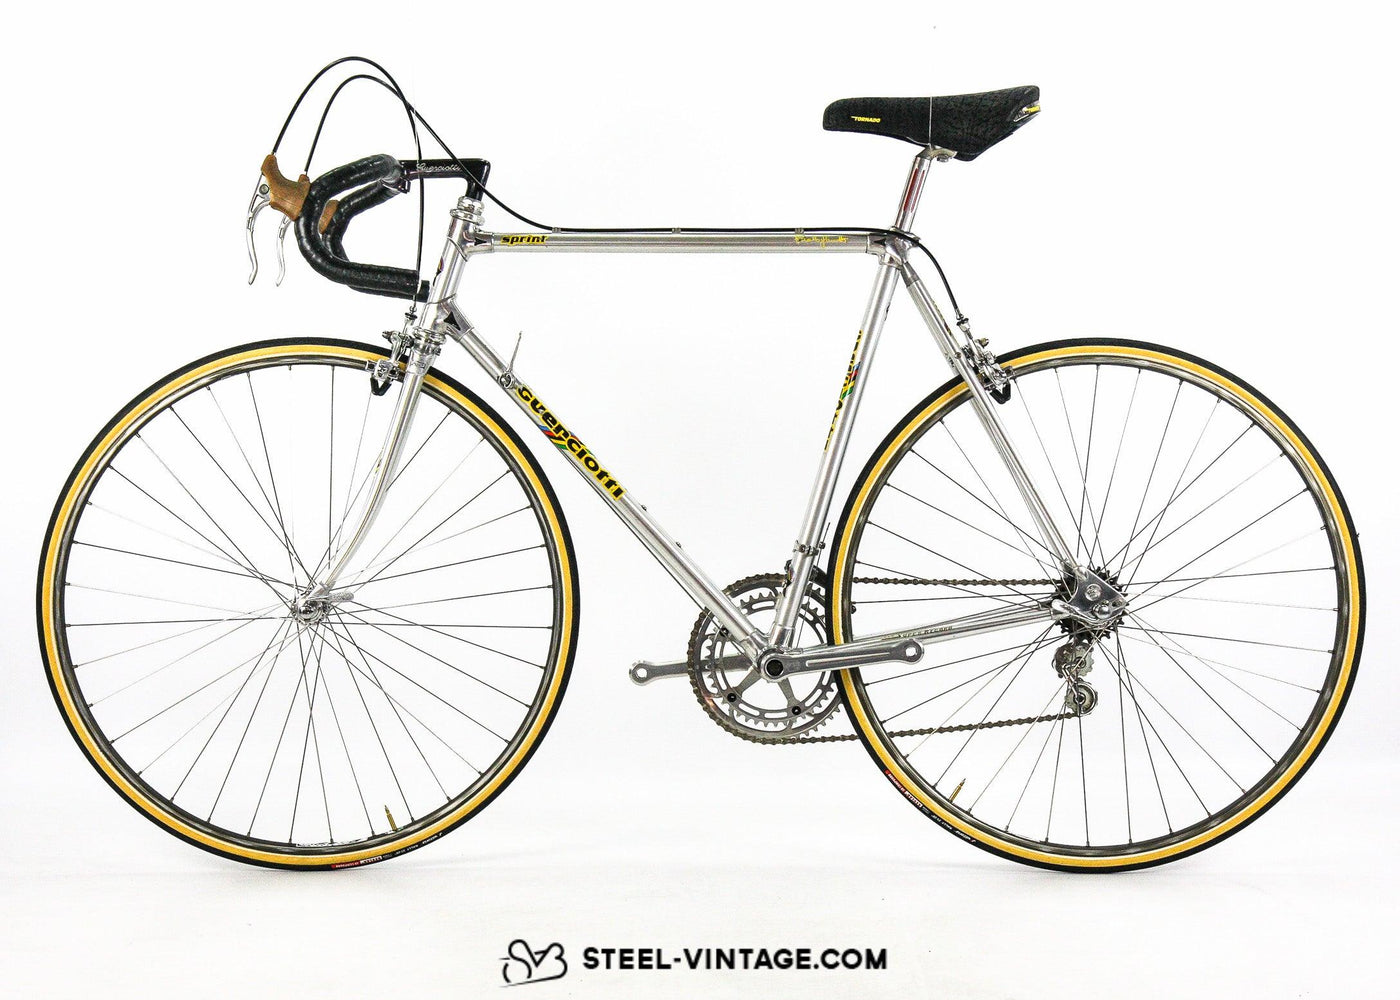 Steel Vintage Bikes - Guerciotti Super Record Classic Road Bike 1980s